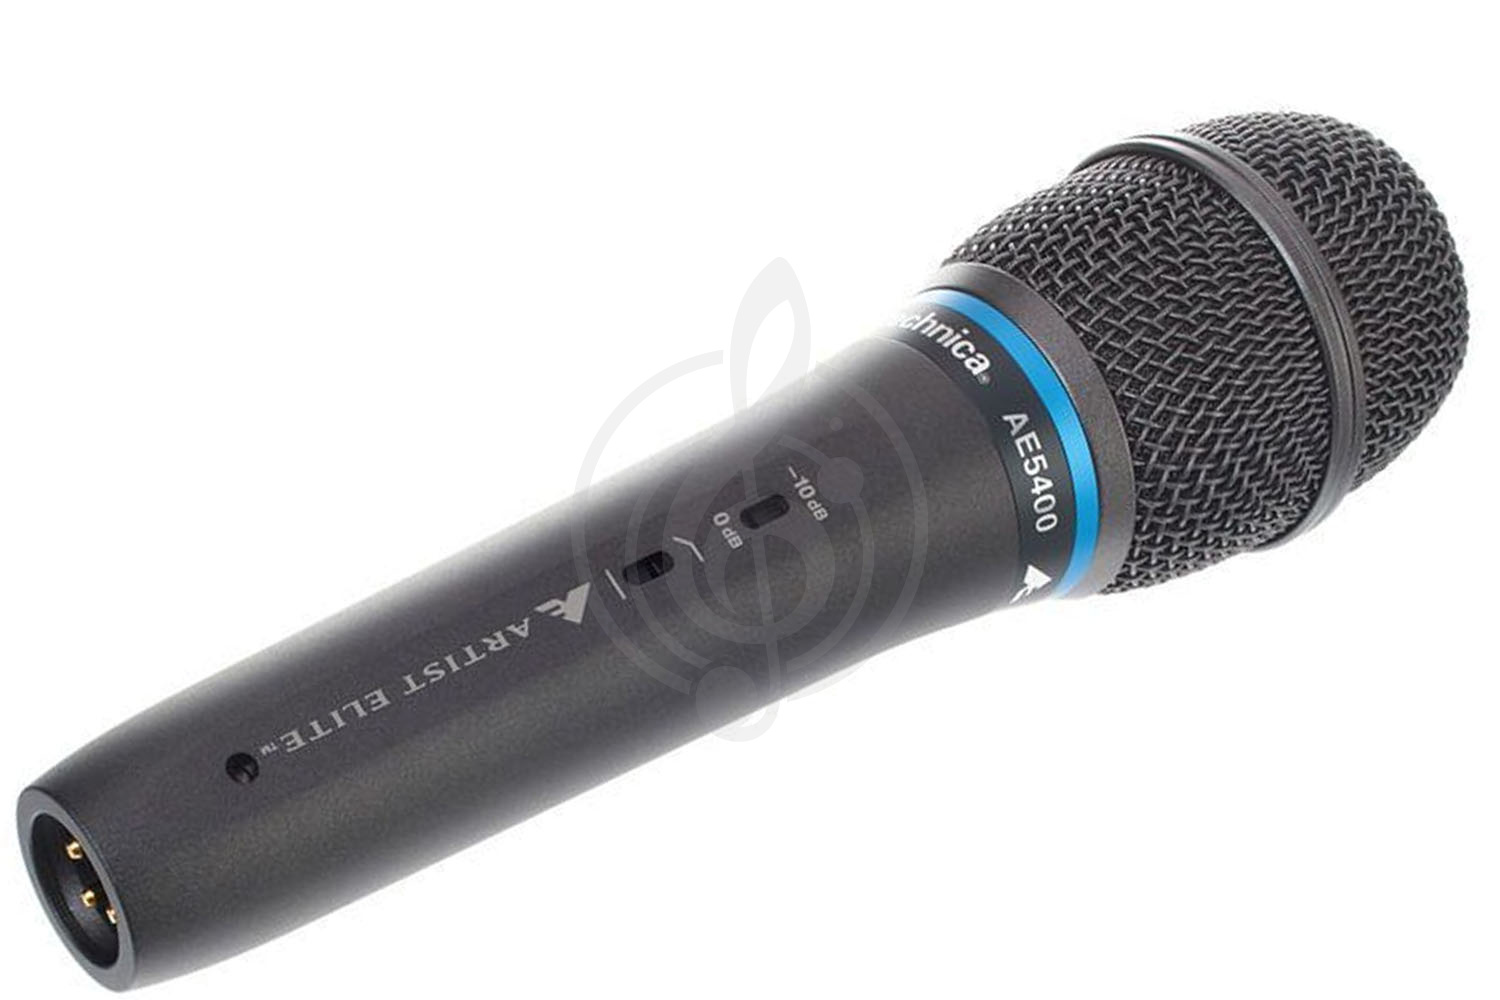 Конденсаторный вокальный микрофон Конденсаторные вокальные микрофоны AUDIO-TECHNICA Audio-Technica AE5400 - конденсаторный вокальный микрофон AE5400 - фото 1